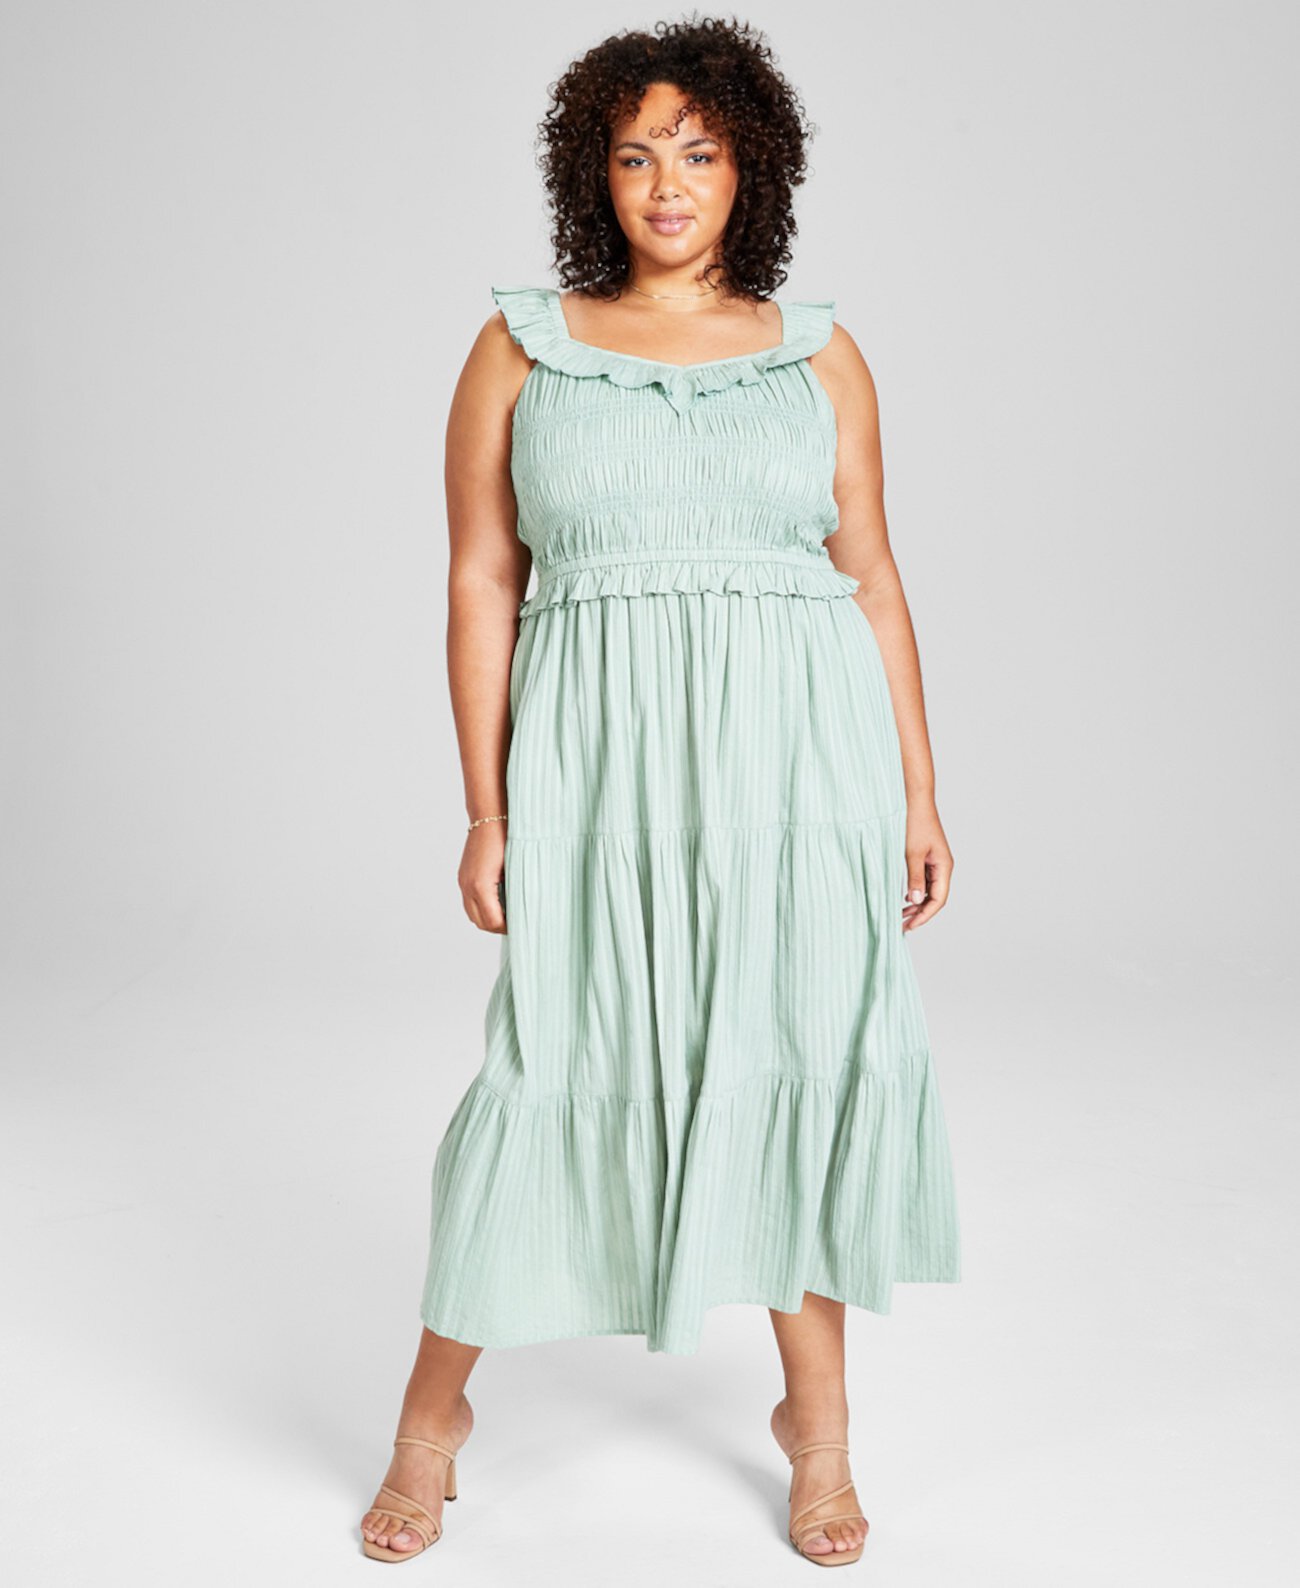 Модное платье больших размеров с оборками и присборенным верхом, созданное для Macy's And Now This